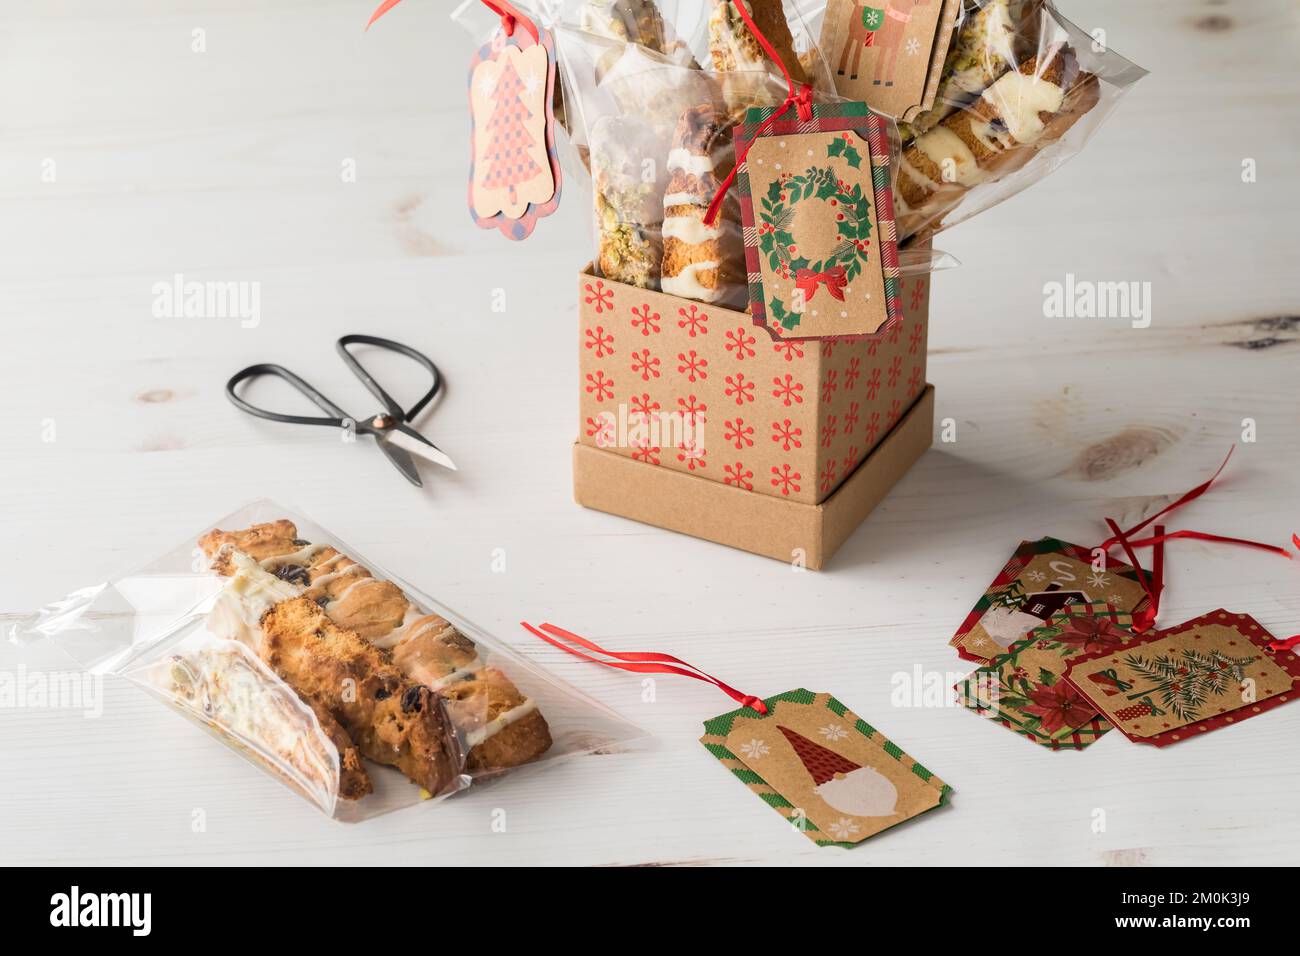 Gli articoli utilizzati per preparare i biscotti trattano le borse come regali per le feste. Foto Stock